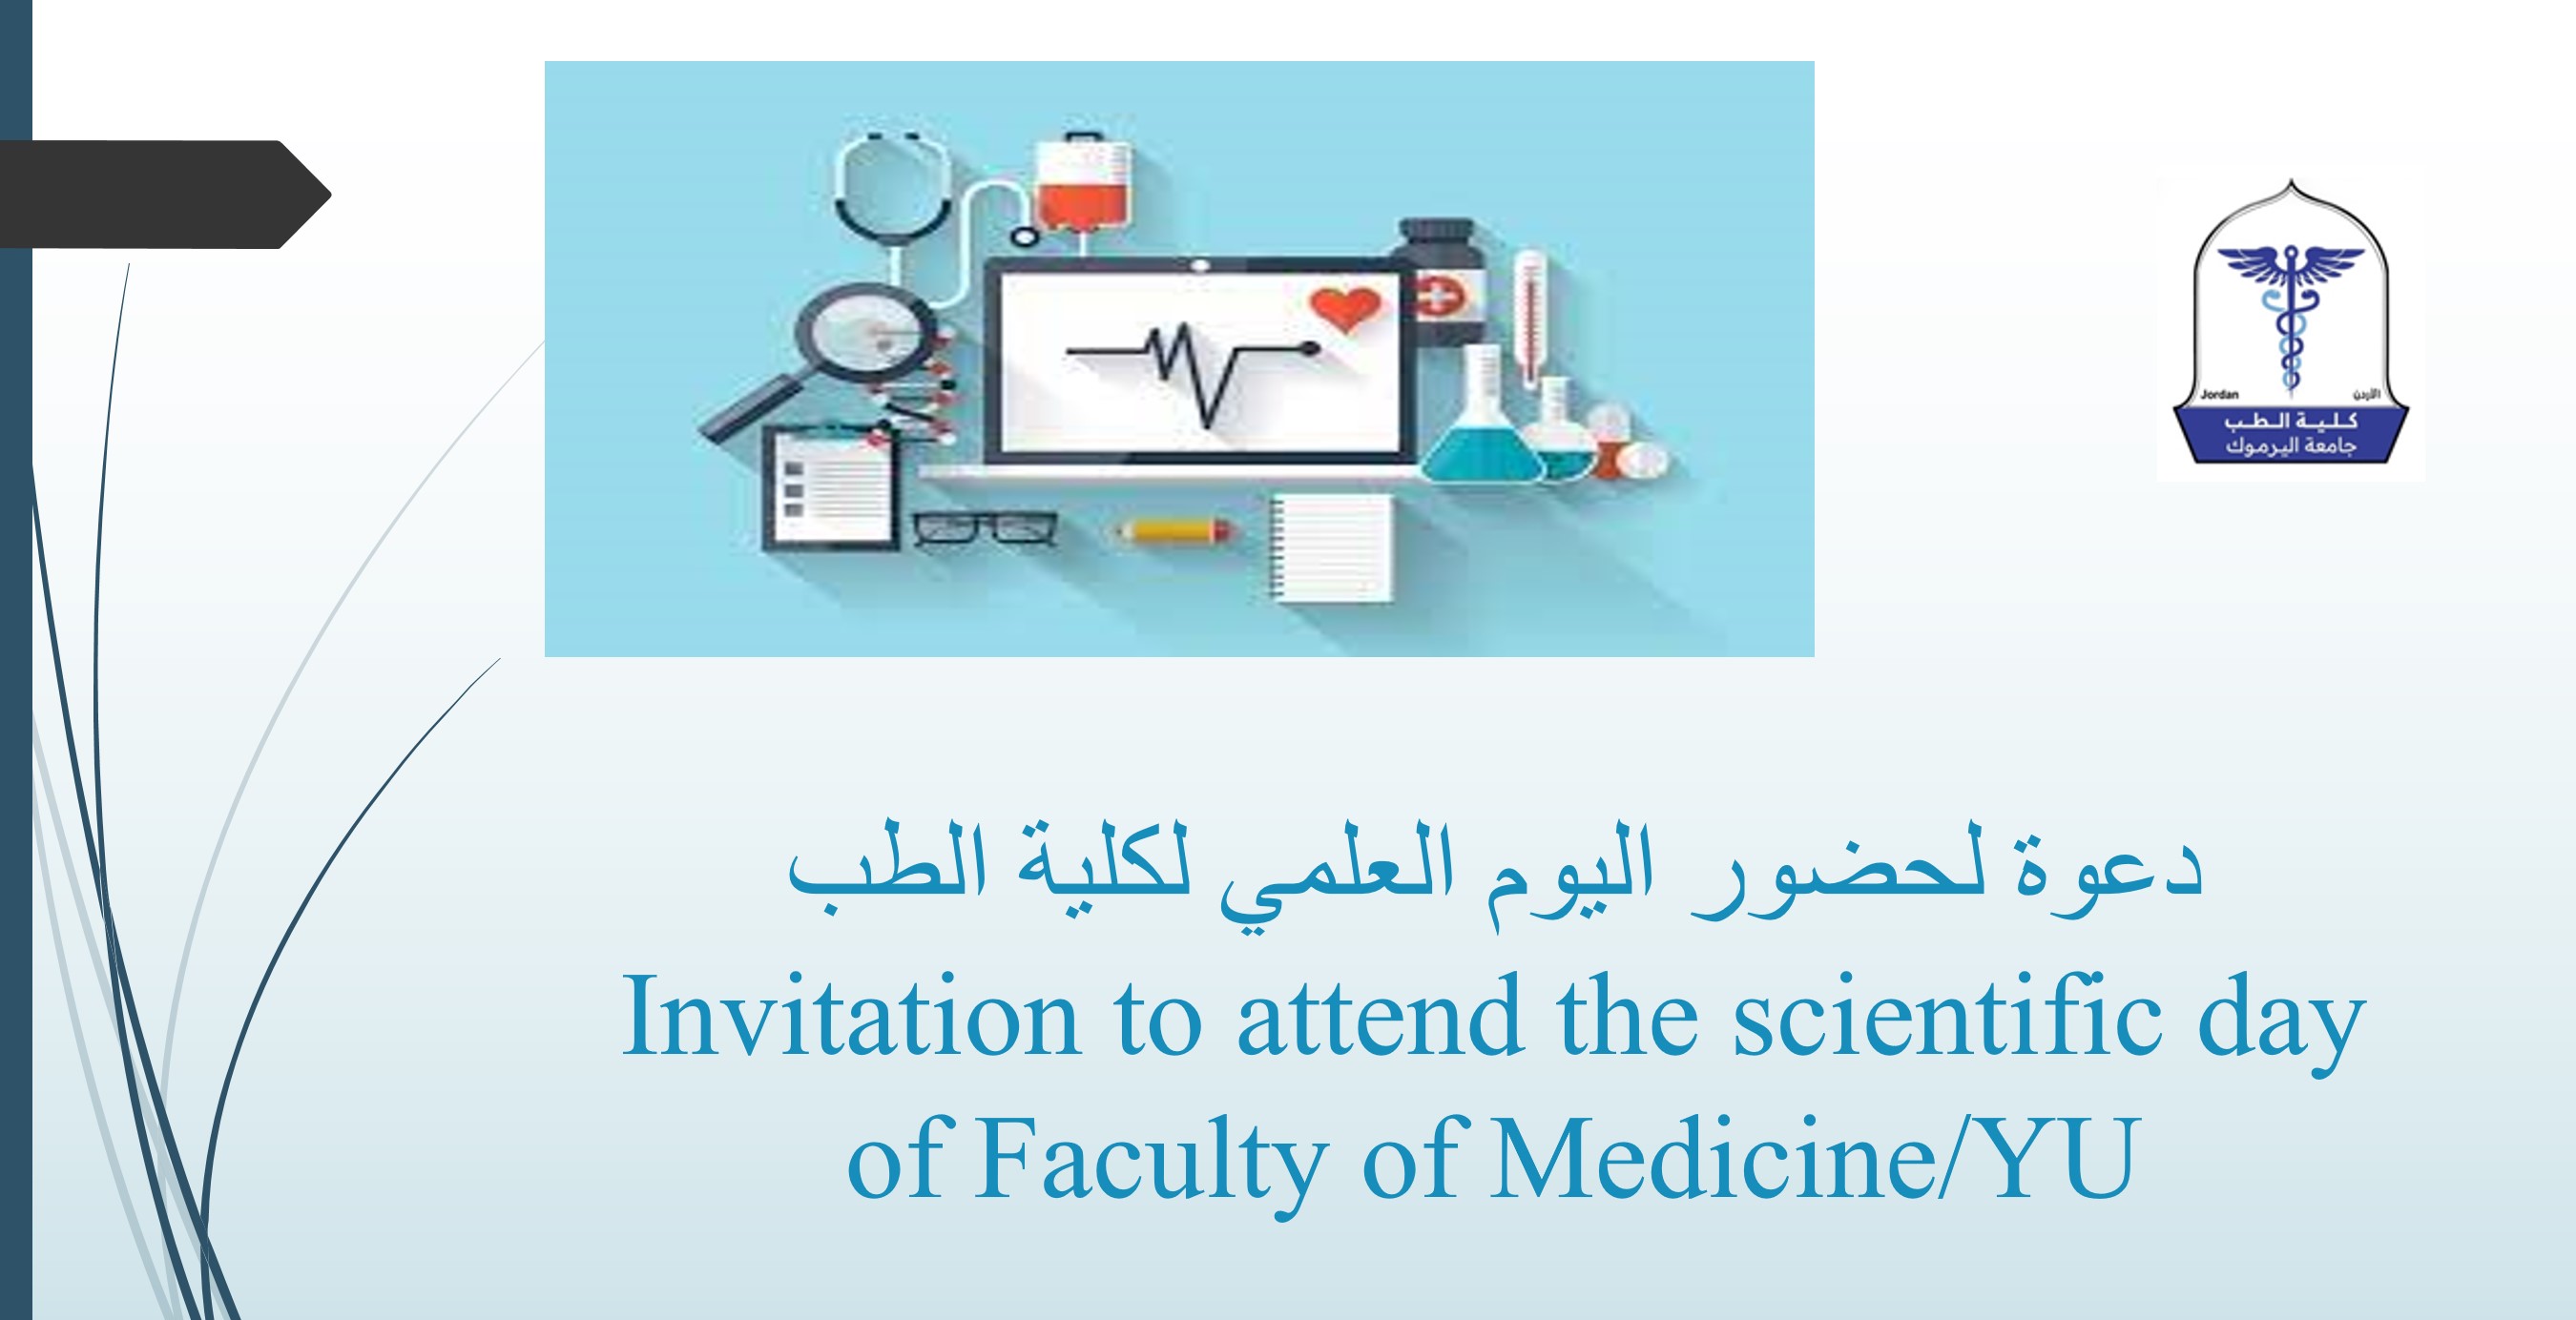 Invitation to attend the scientific day of FM/YU